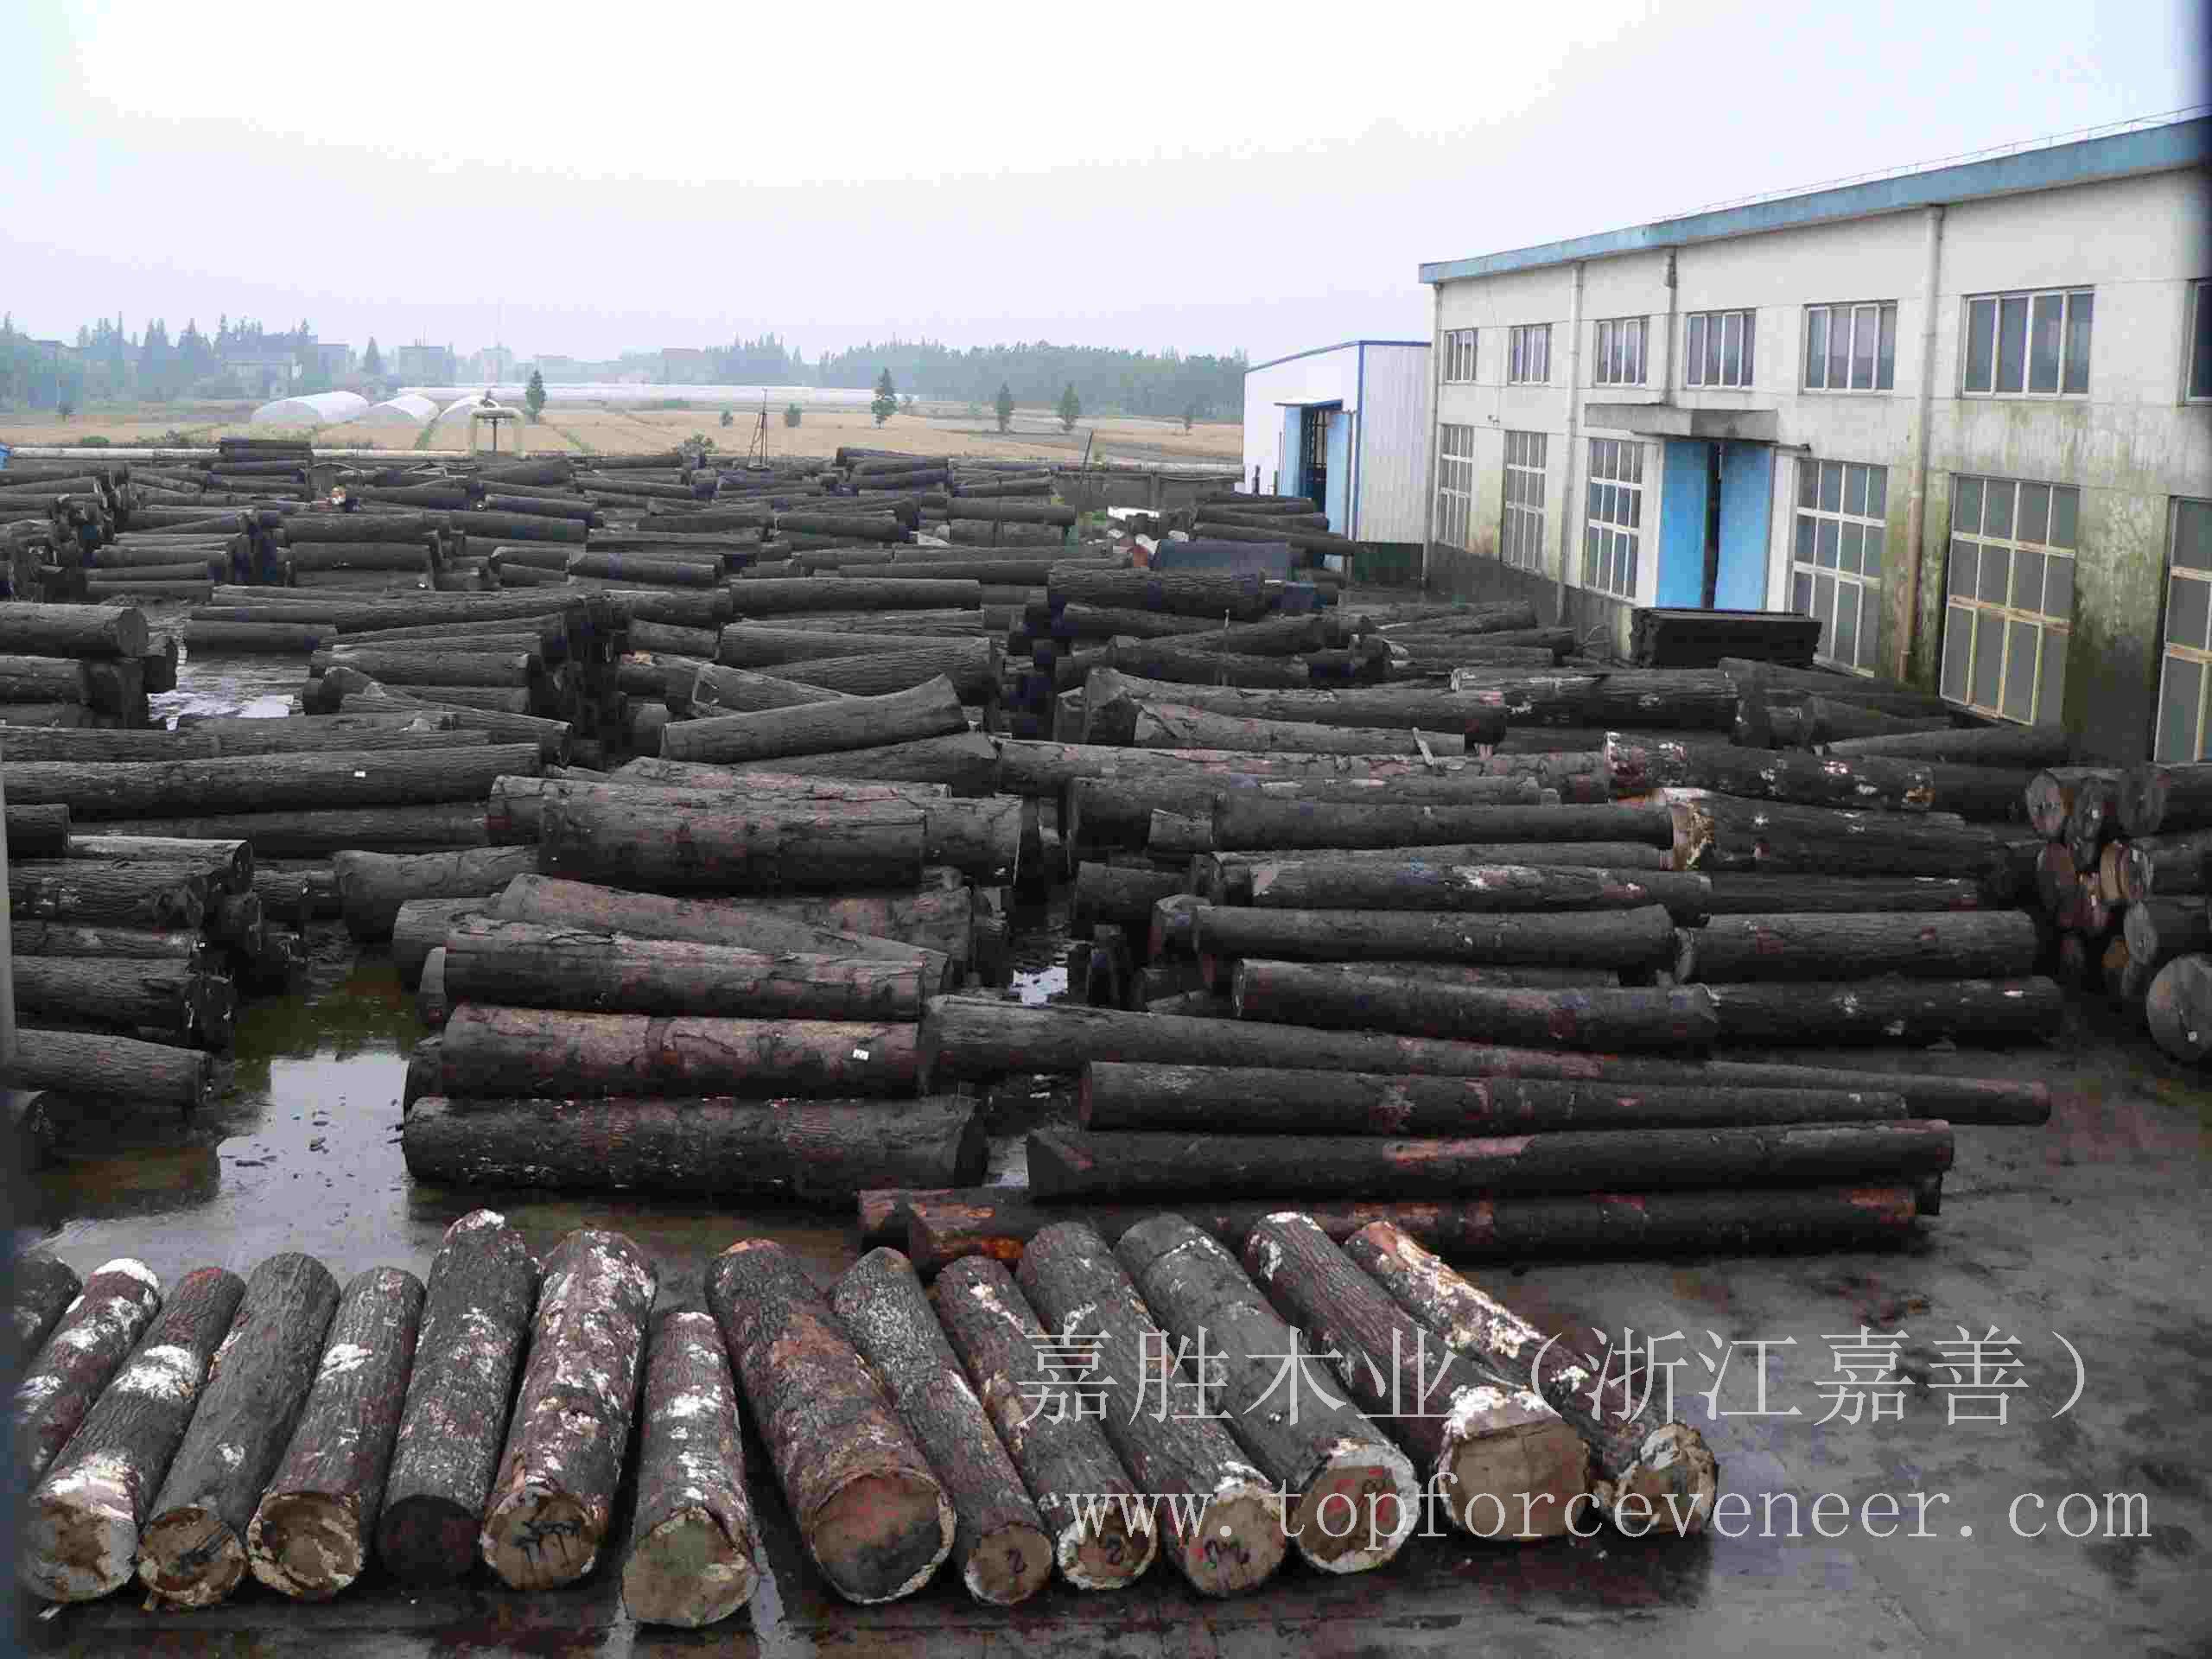 江苏美国黑胡桃原木,JiangSu American Walnut Logs,二面清,三面清锯切级,三面清旋切级和四面清刨切级,锯切